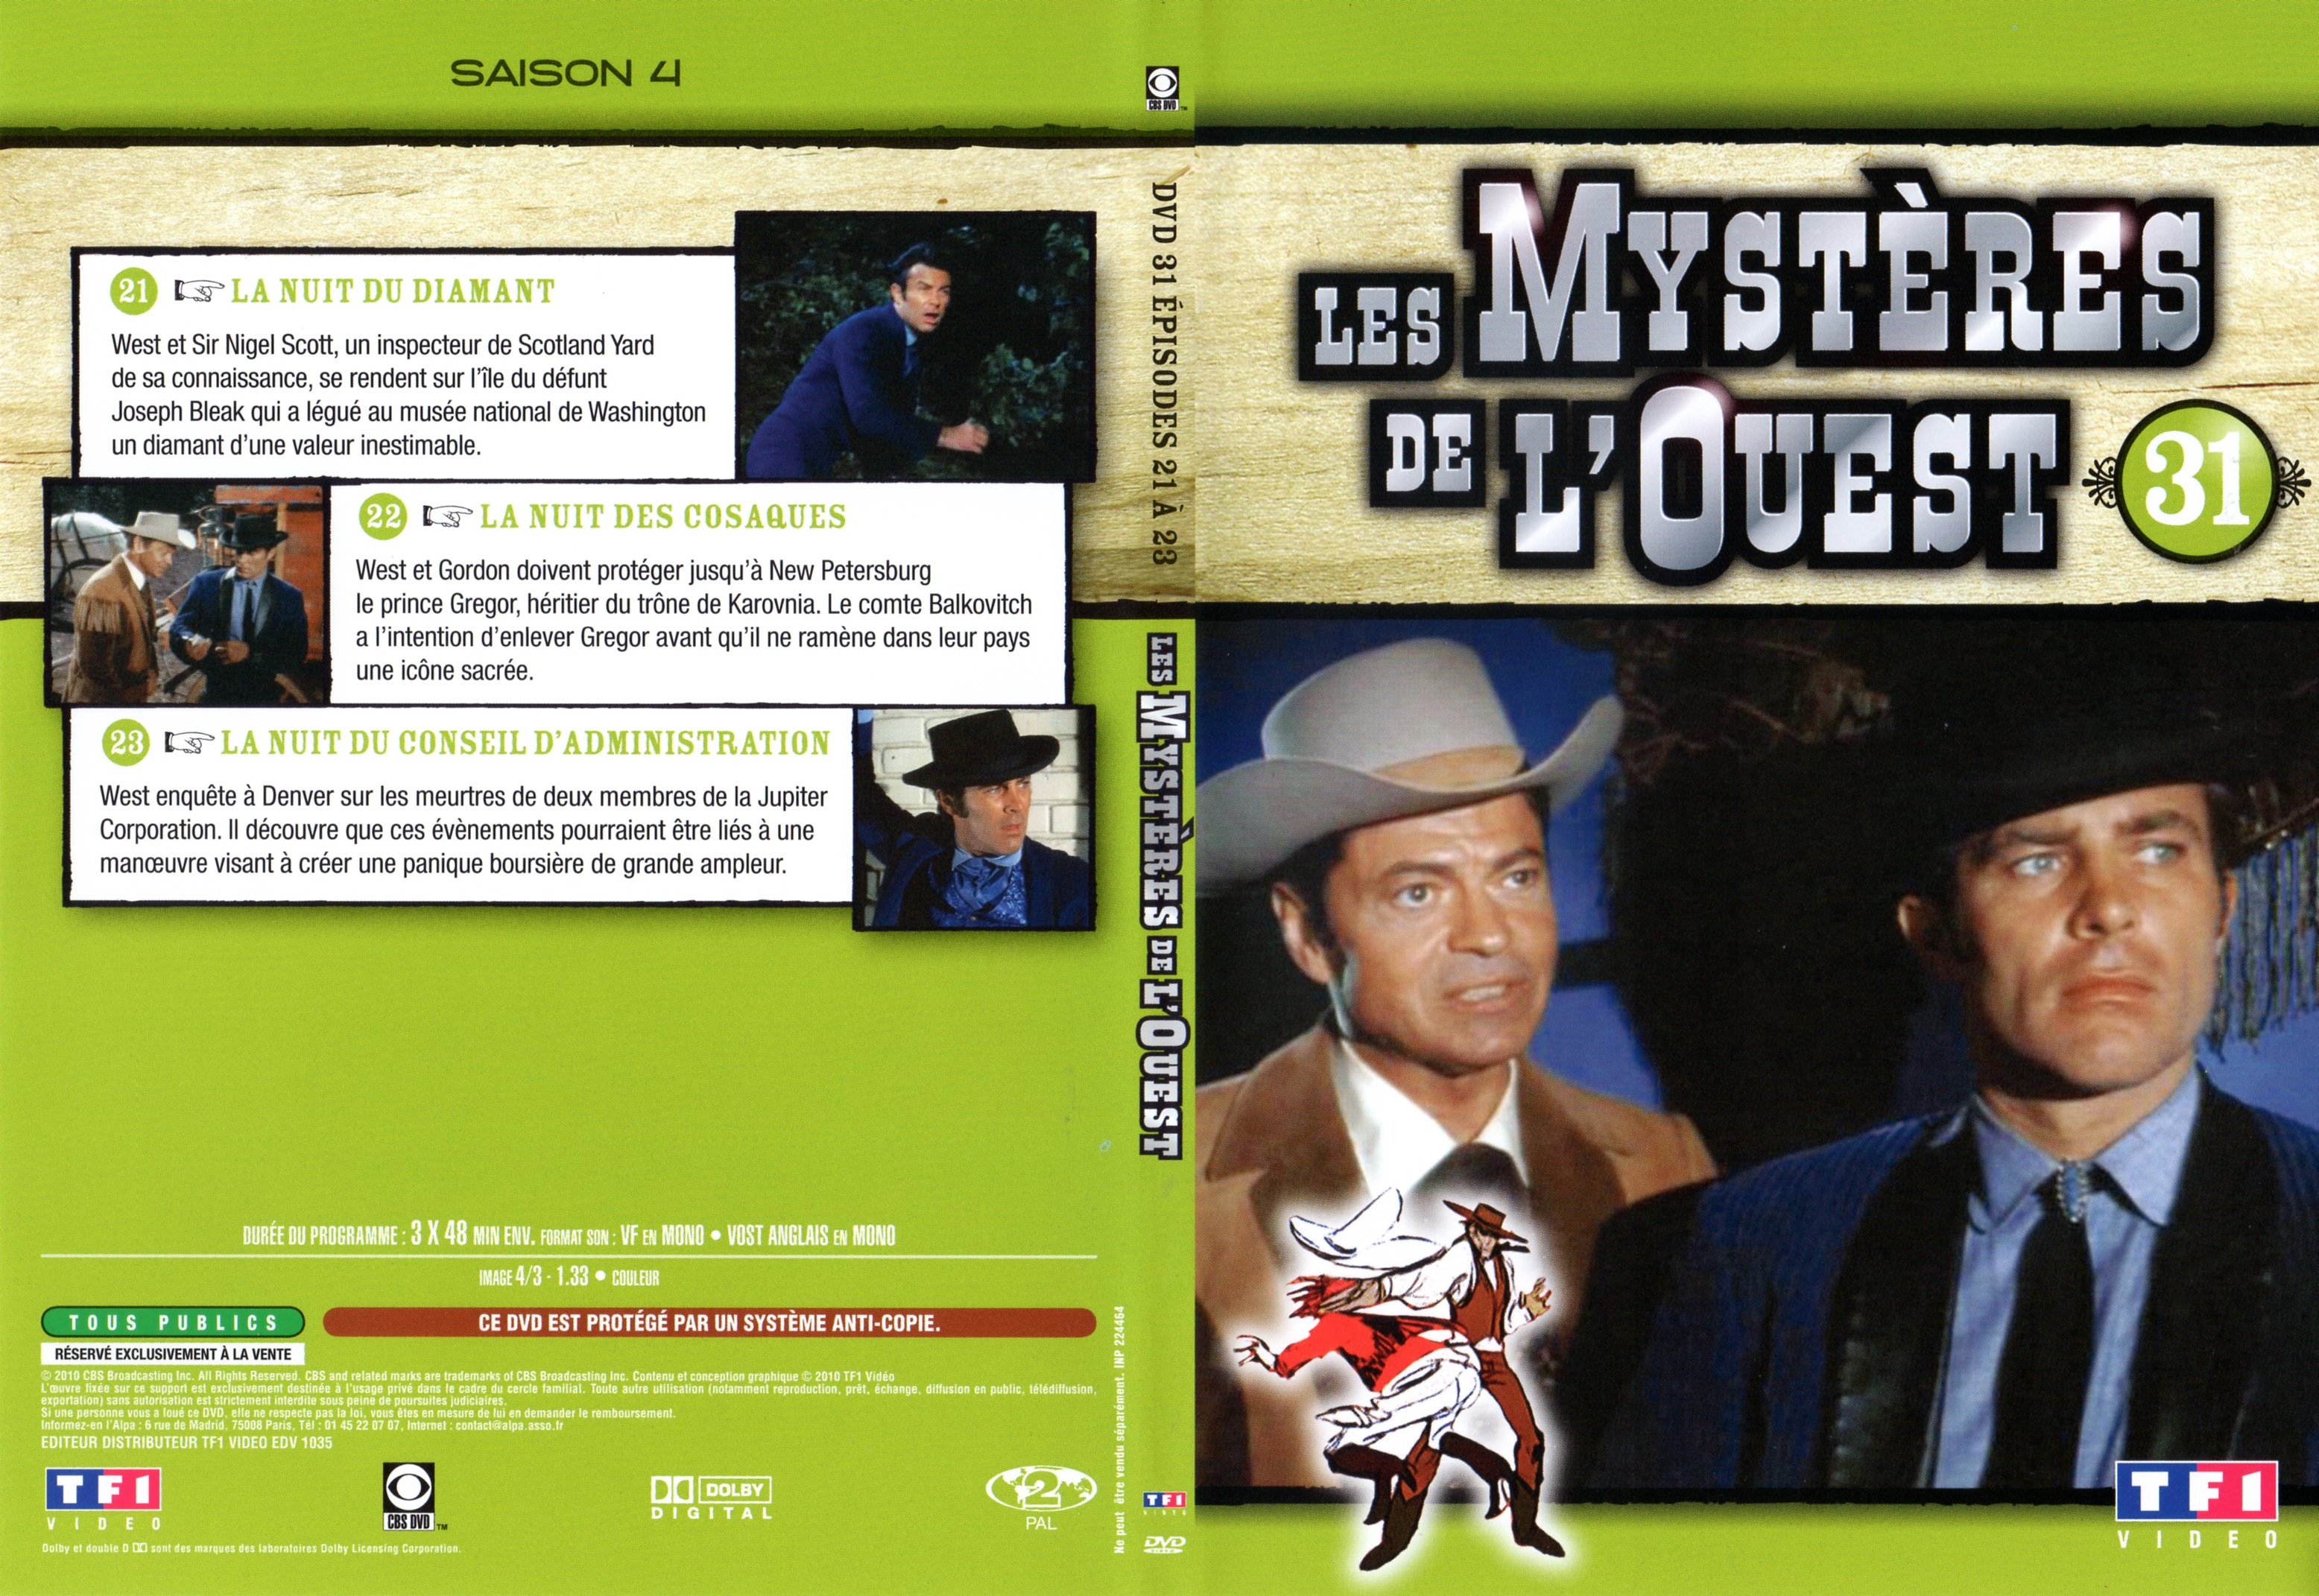 Jaquette DVD Les mystres de l